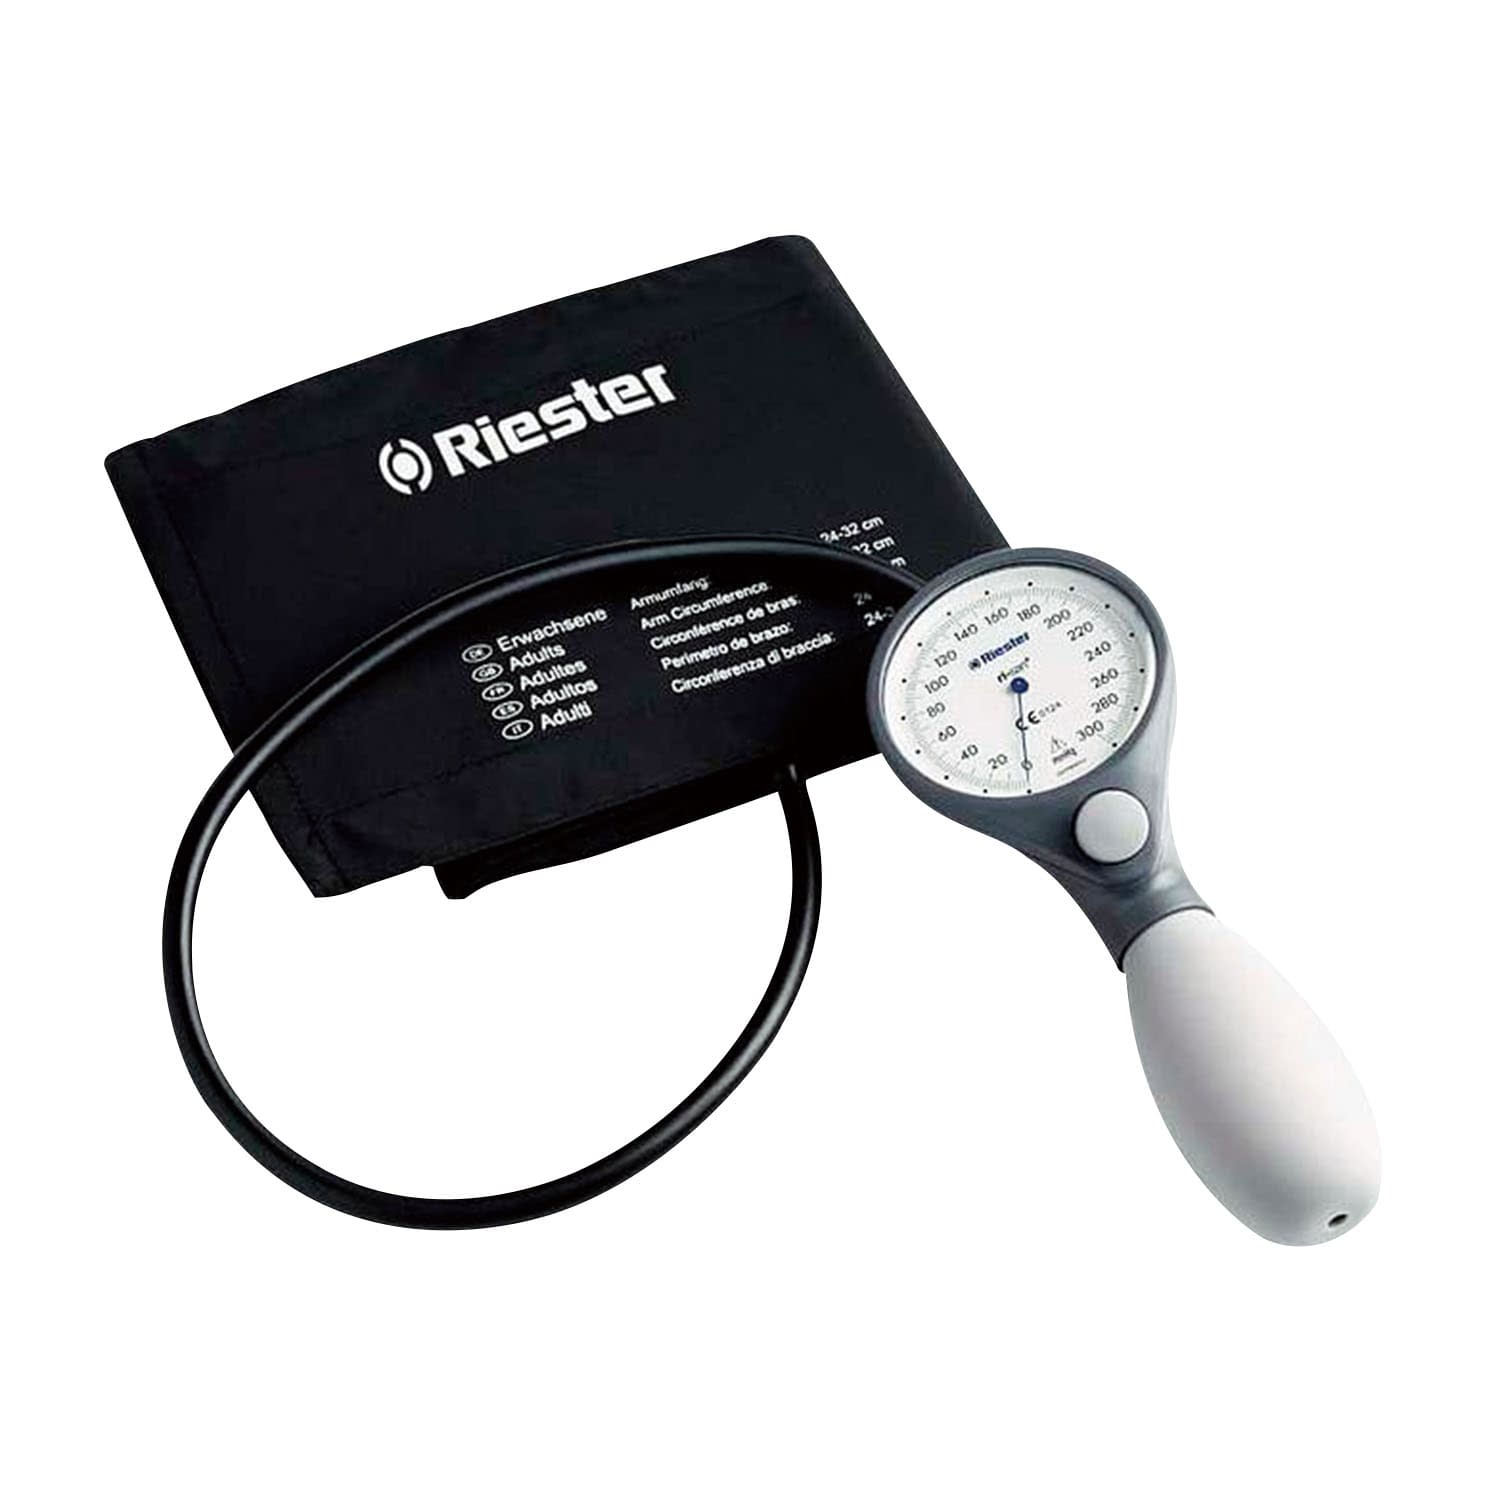 (23-7094-00)リ・サンポケットアネロイド血圧計 1512(ｽﾚｰﾄｸﾞﾚ-) ﾘ･ｻﾝ･ﾎﾟｹｯﾄｱﾈﾛｲﾄﾞｹﾂｱﾂ【1台単位】【2019年カタログ商品】